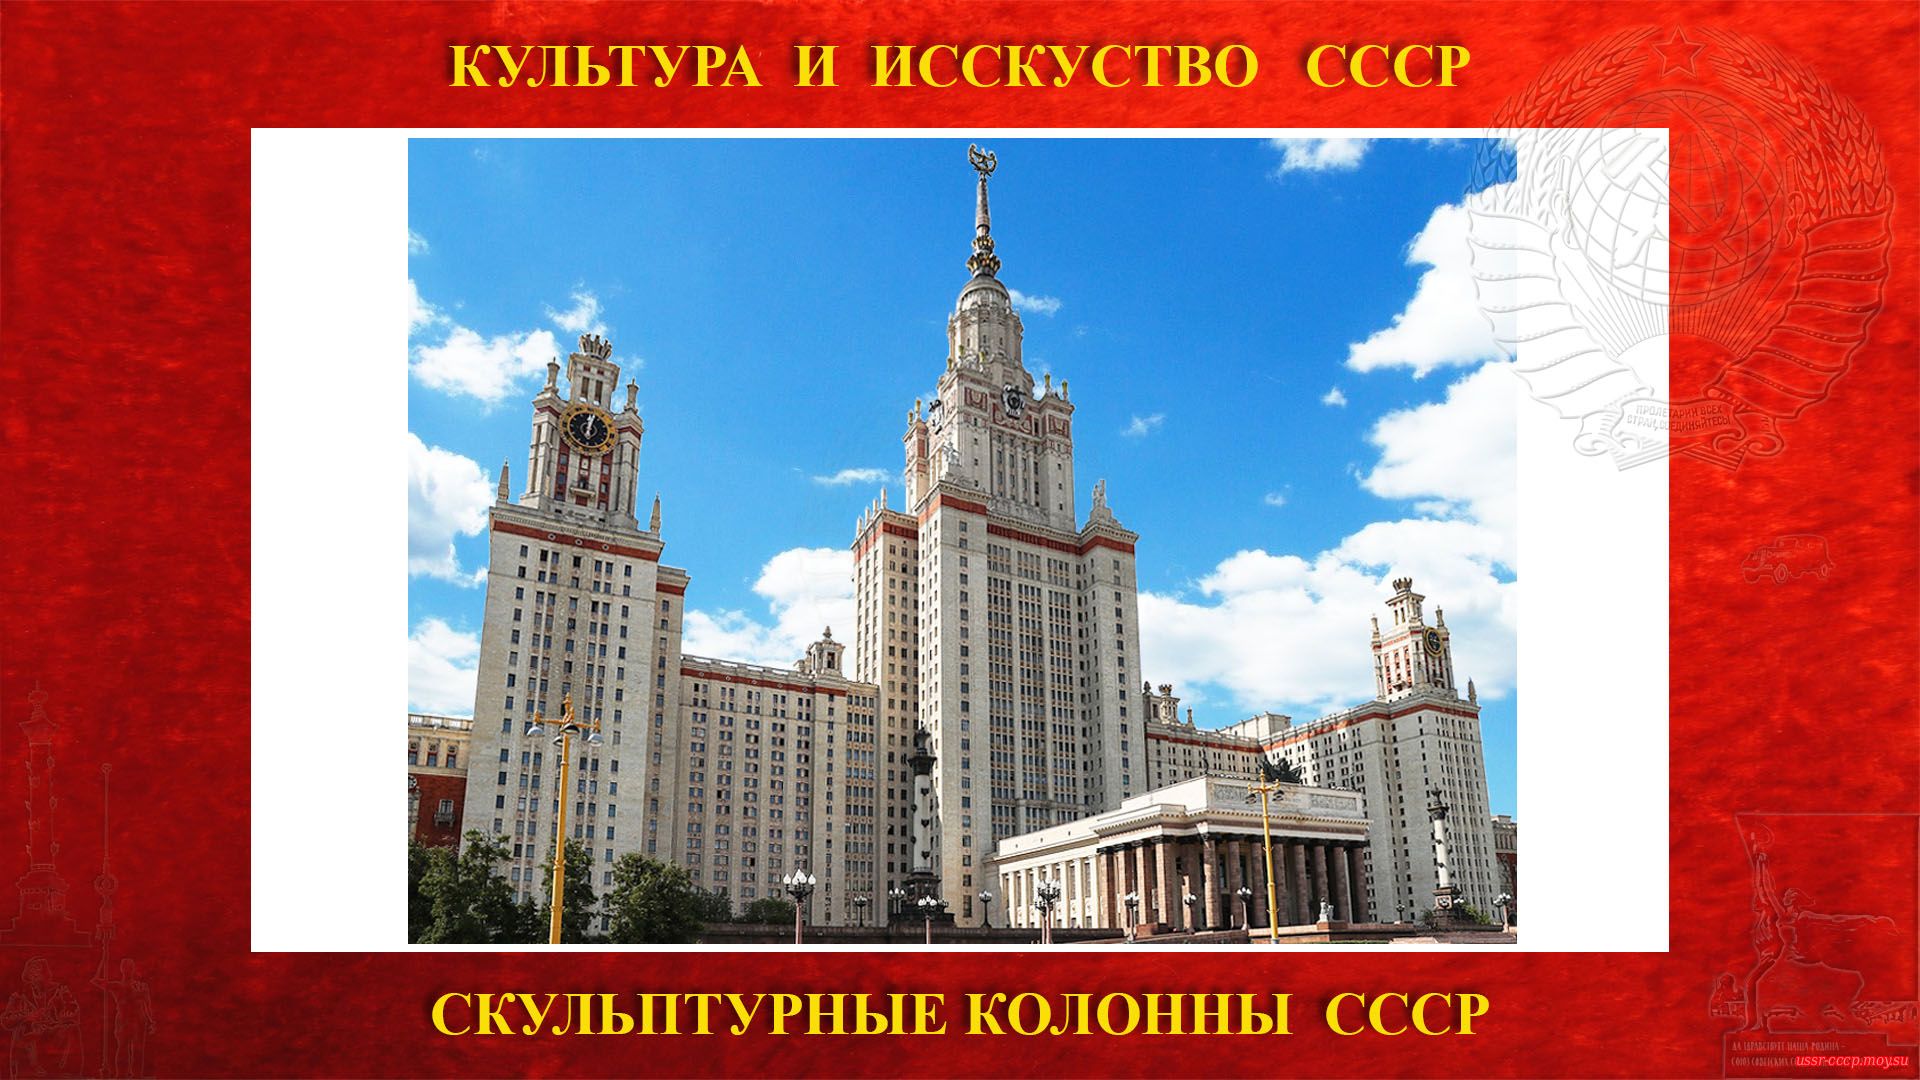 Скульптурные монументальные колонны «Советская наука» на Ленинских горах (Москва 1953) (повествование)